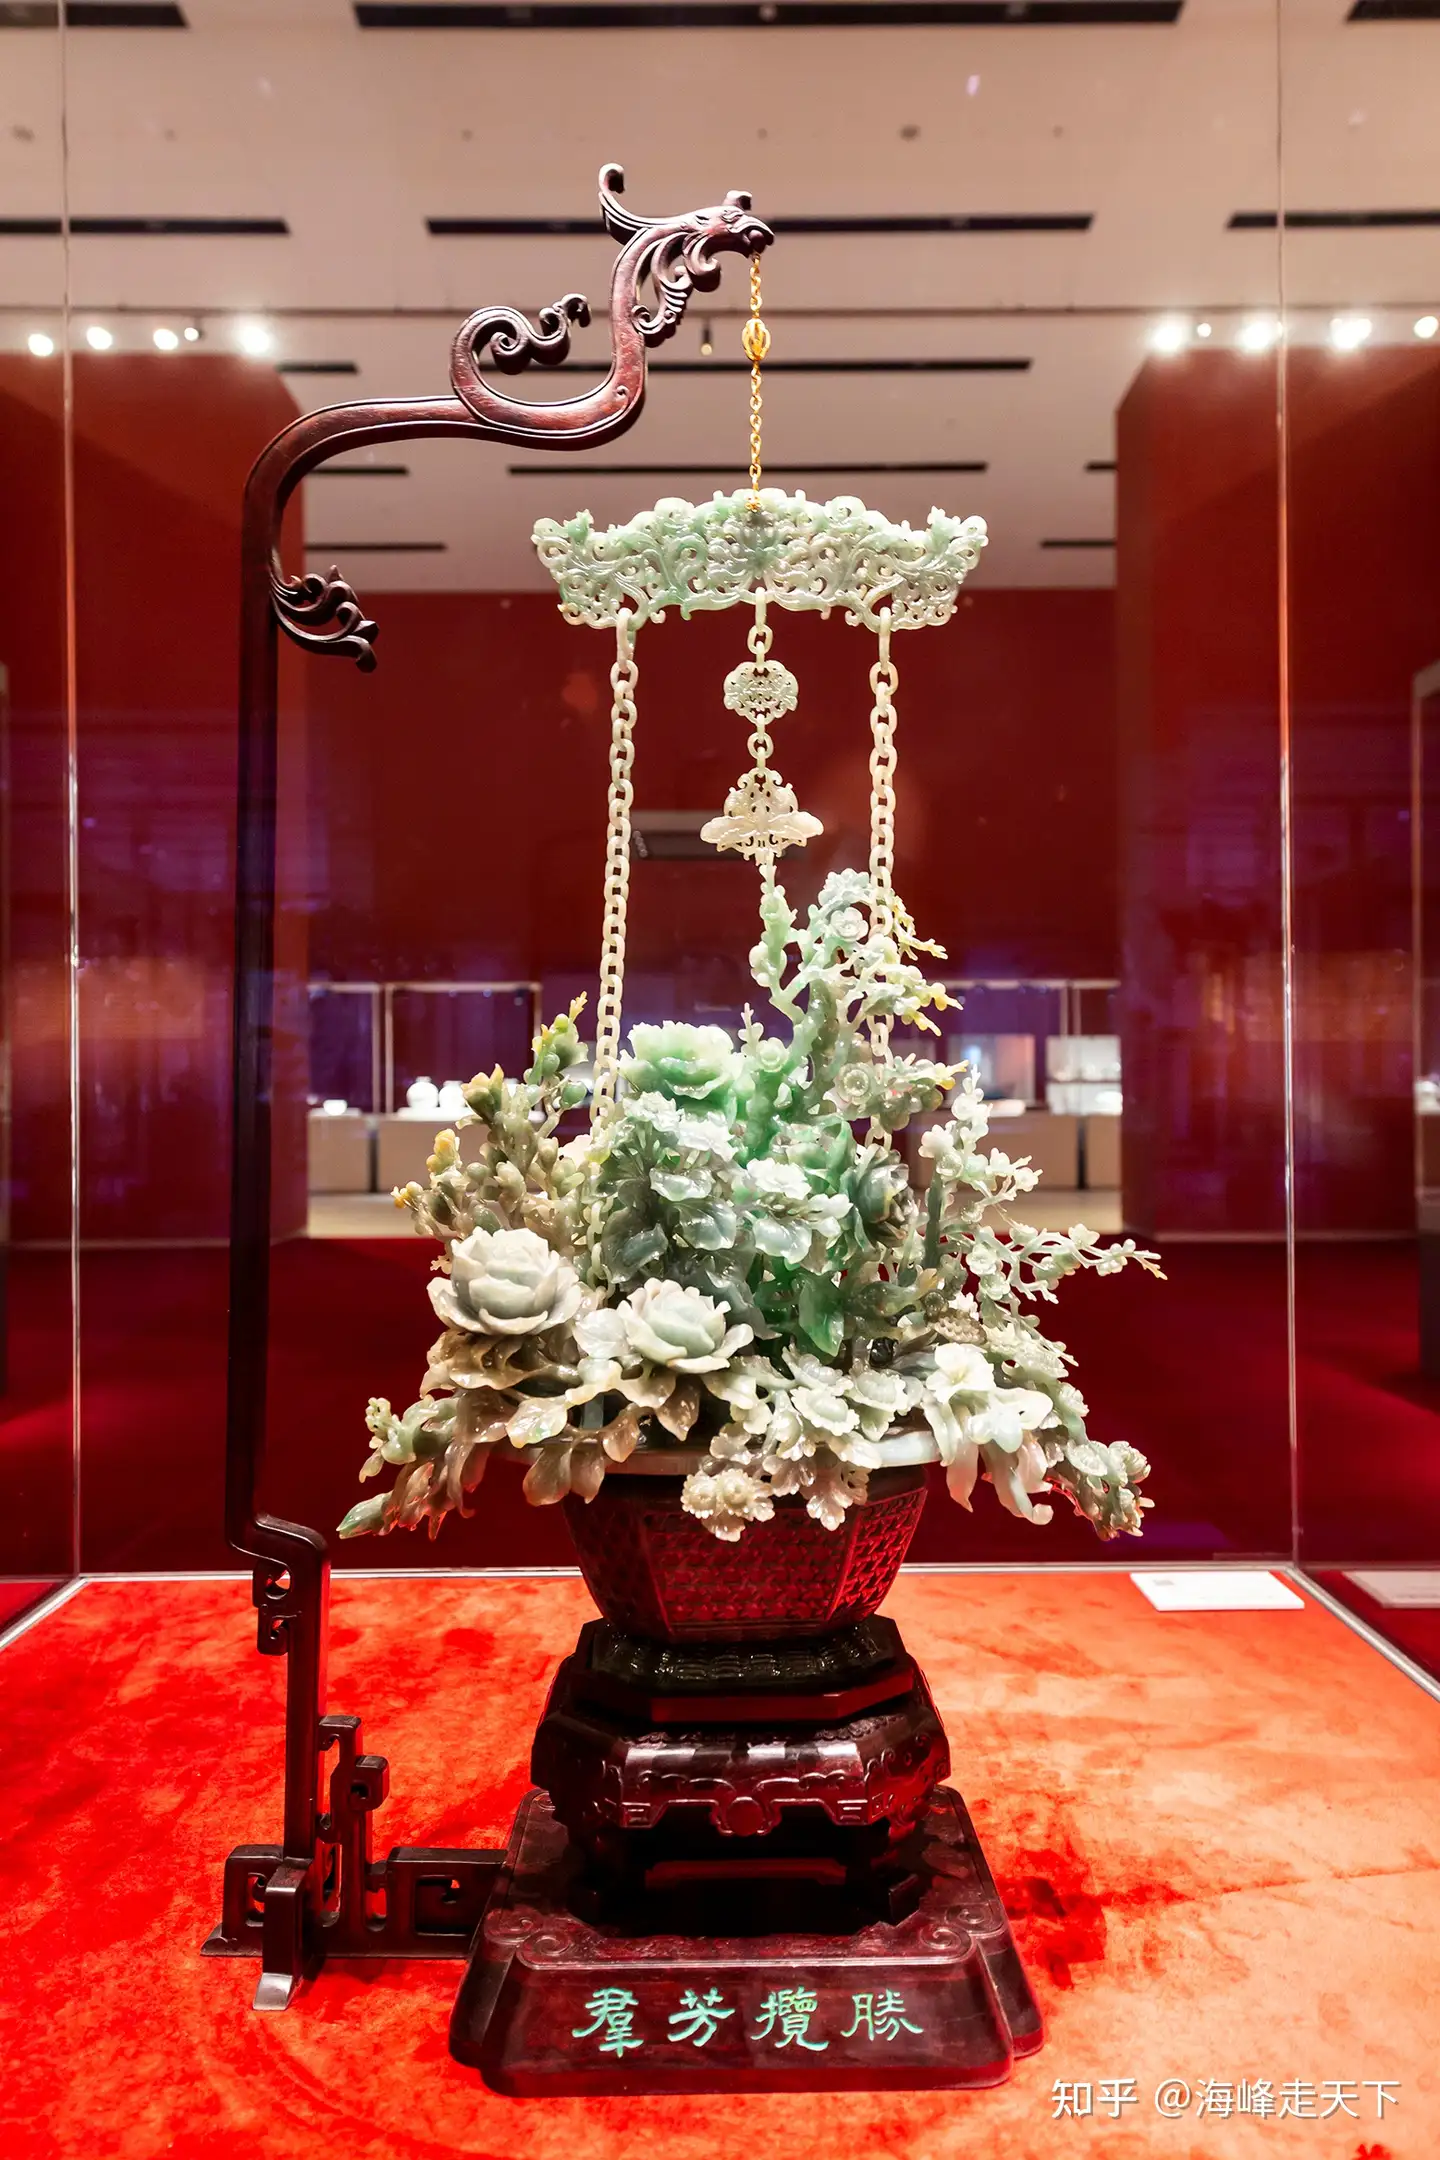 中国工艺美术馆·中国非物质文化遗产馆“四大国宝”之一的“玉雕翡翠花篮